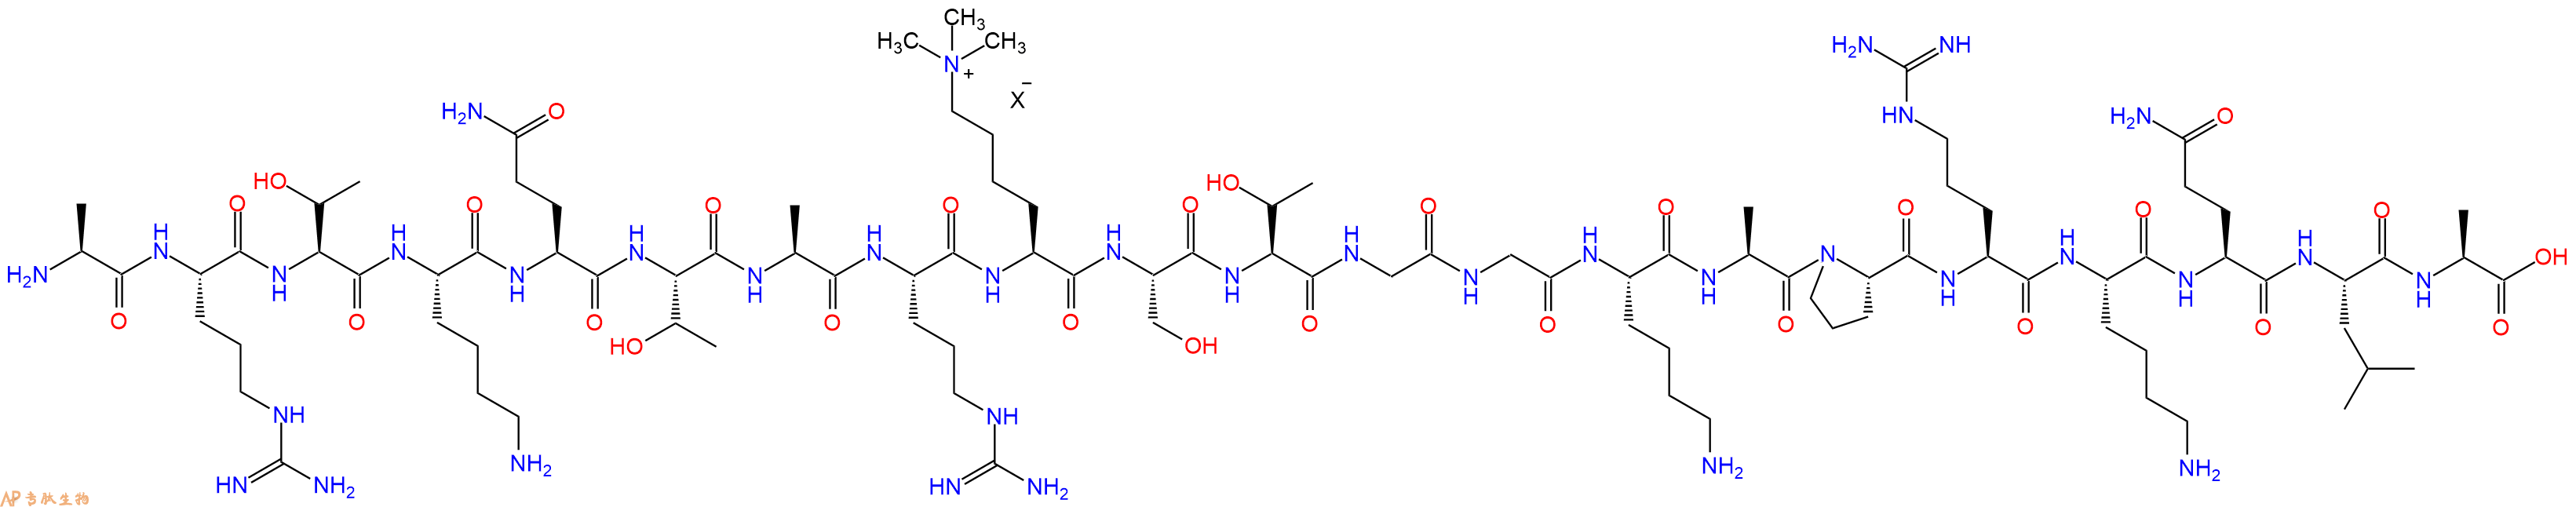 专肽生物产品组蛋白肽段[Lys(Me3)9]-Histone H3(1-21), H3K9(Me3)